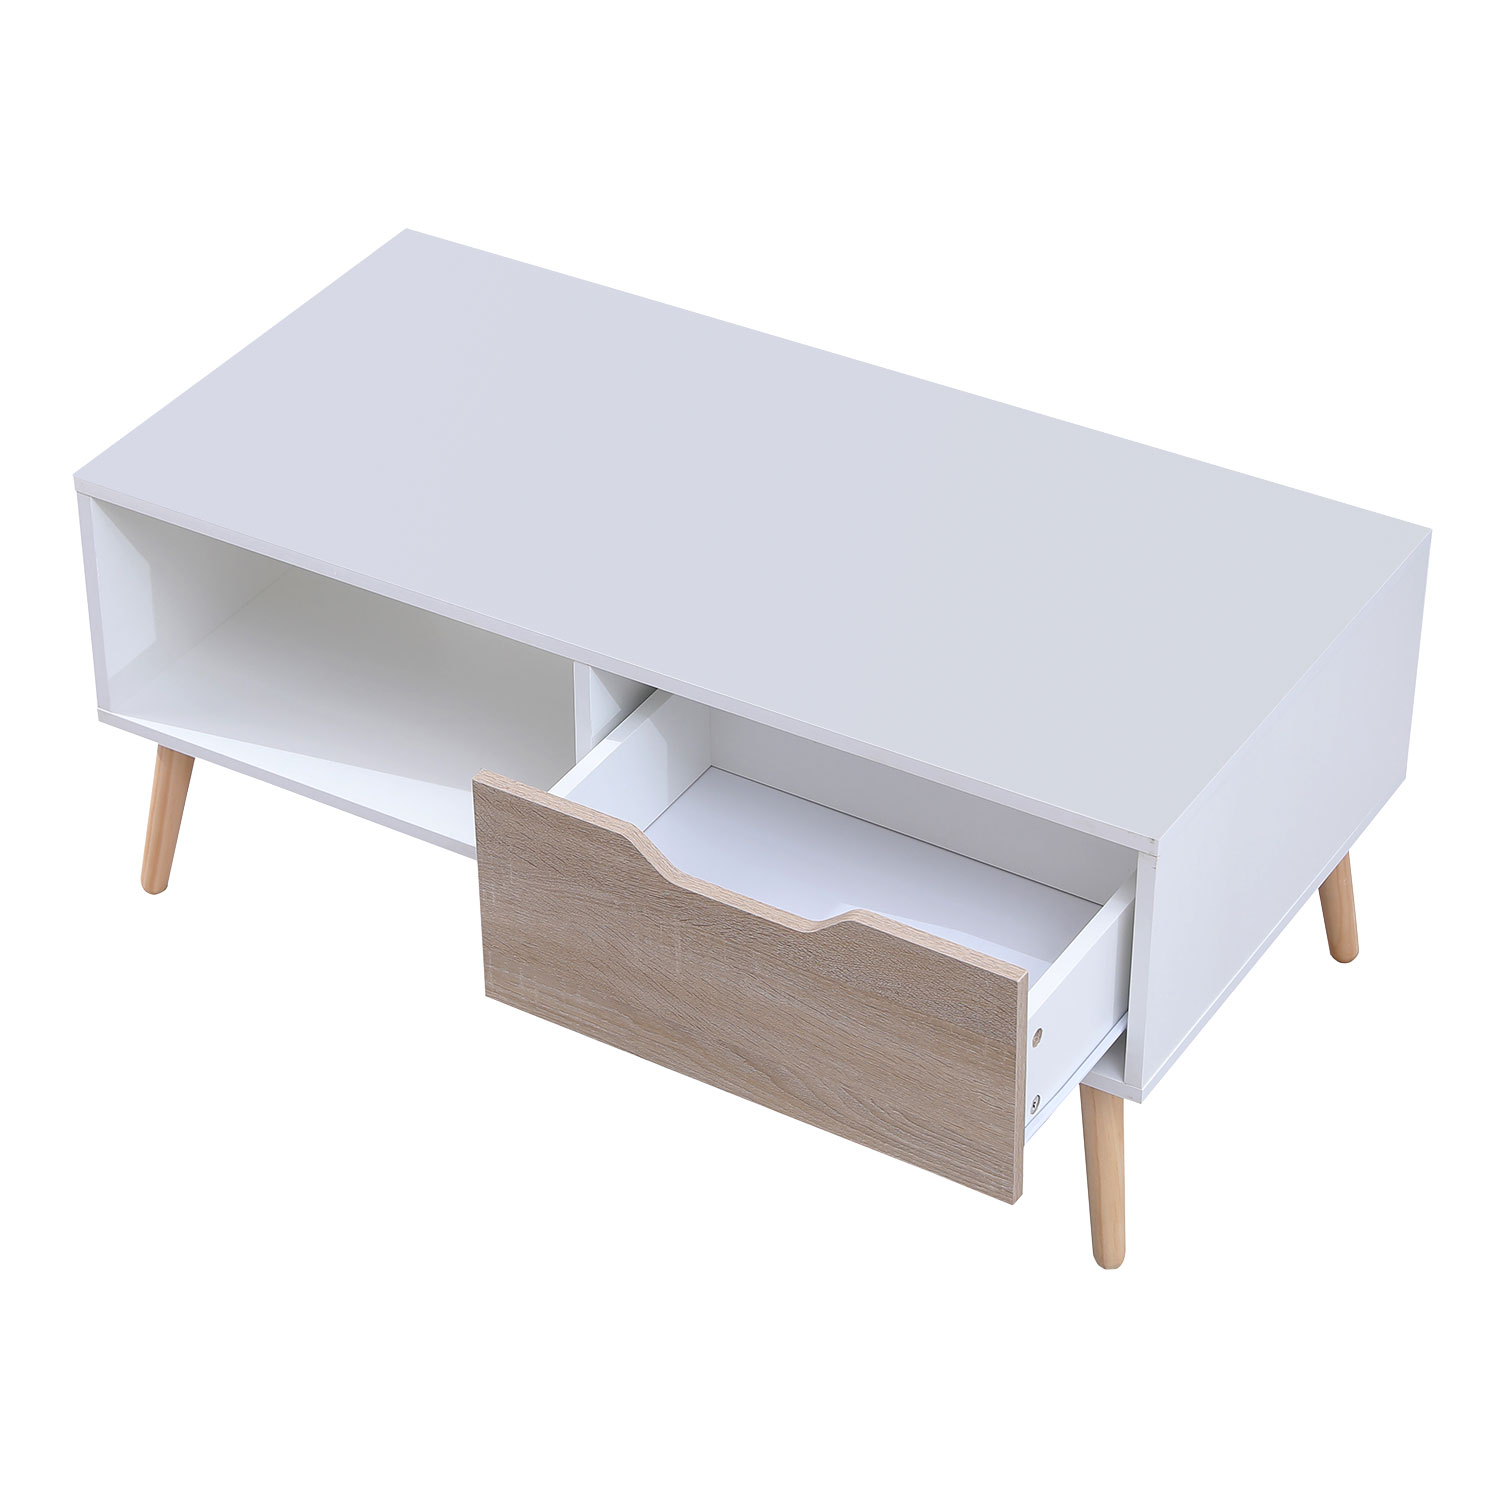 Tavolino FREJA bianco in stile scandinavo con cassetto